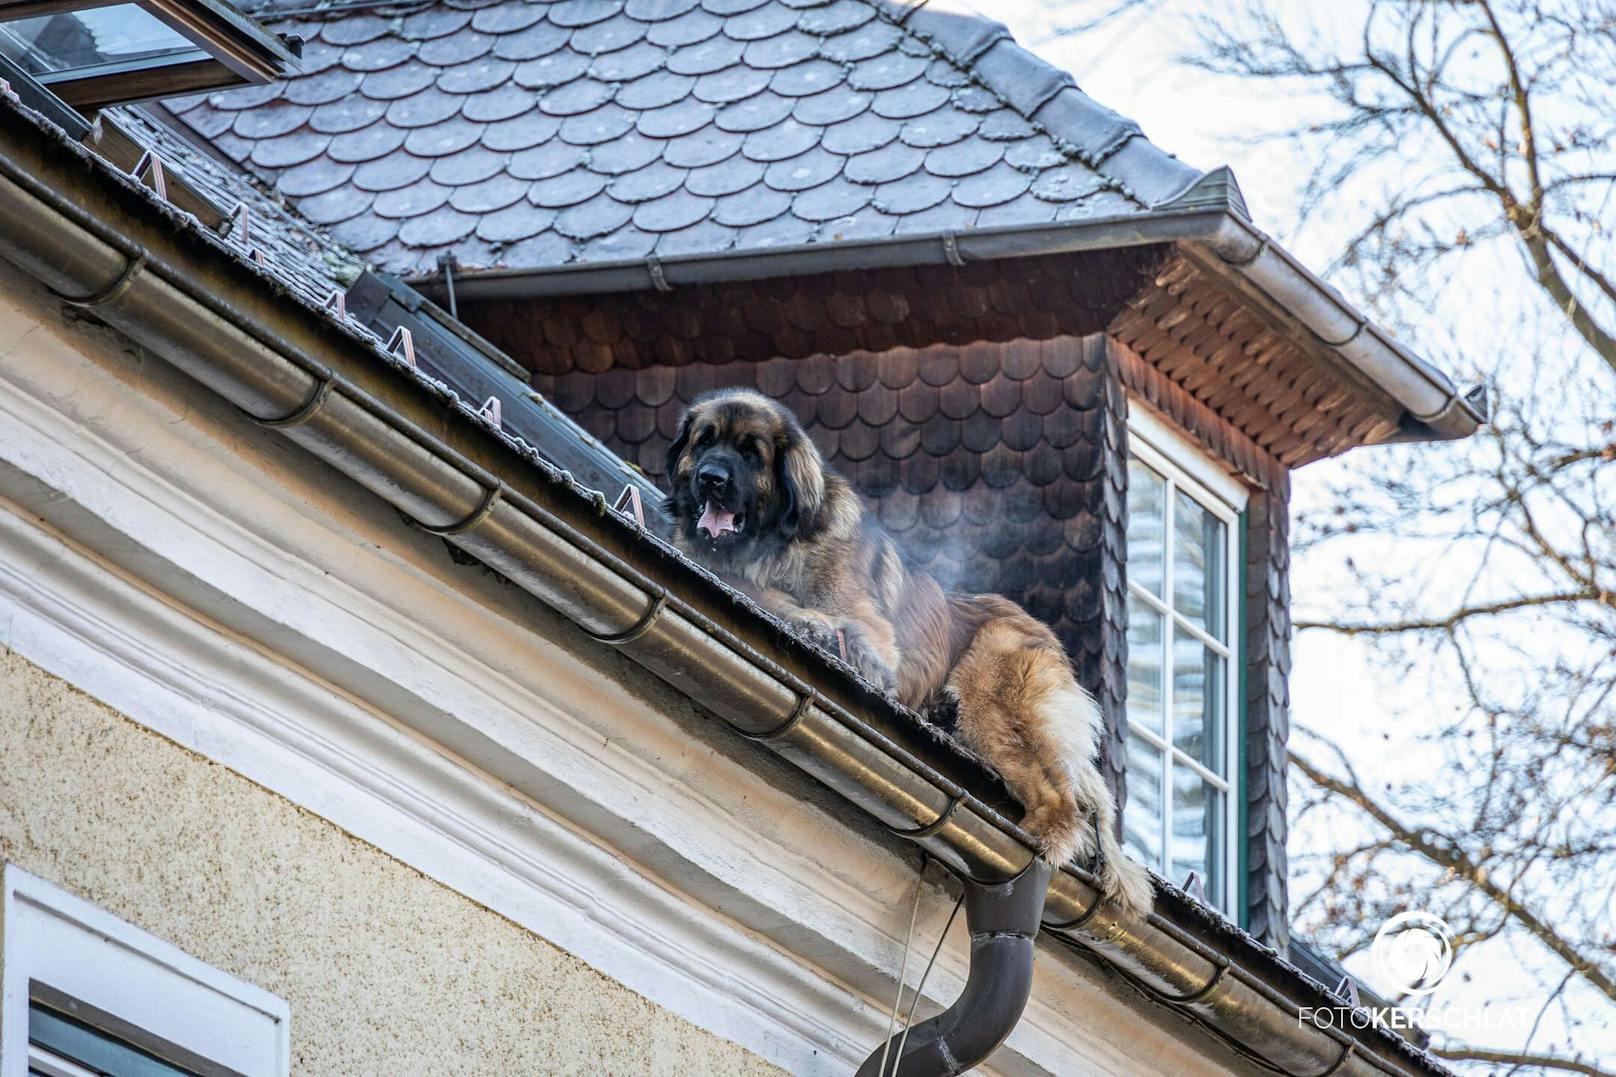 60-Kilo-Hund stürzt von Dach, Feuerwehrmann fängt ihn